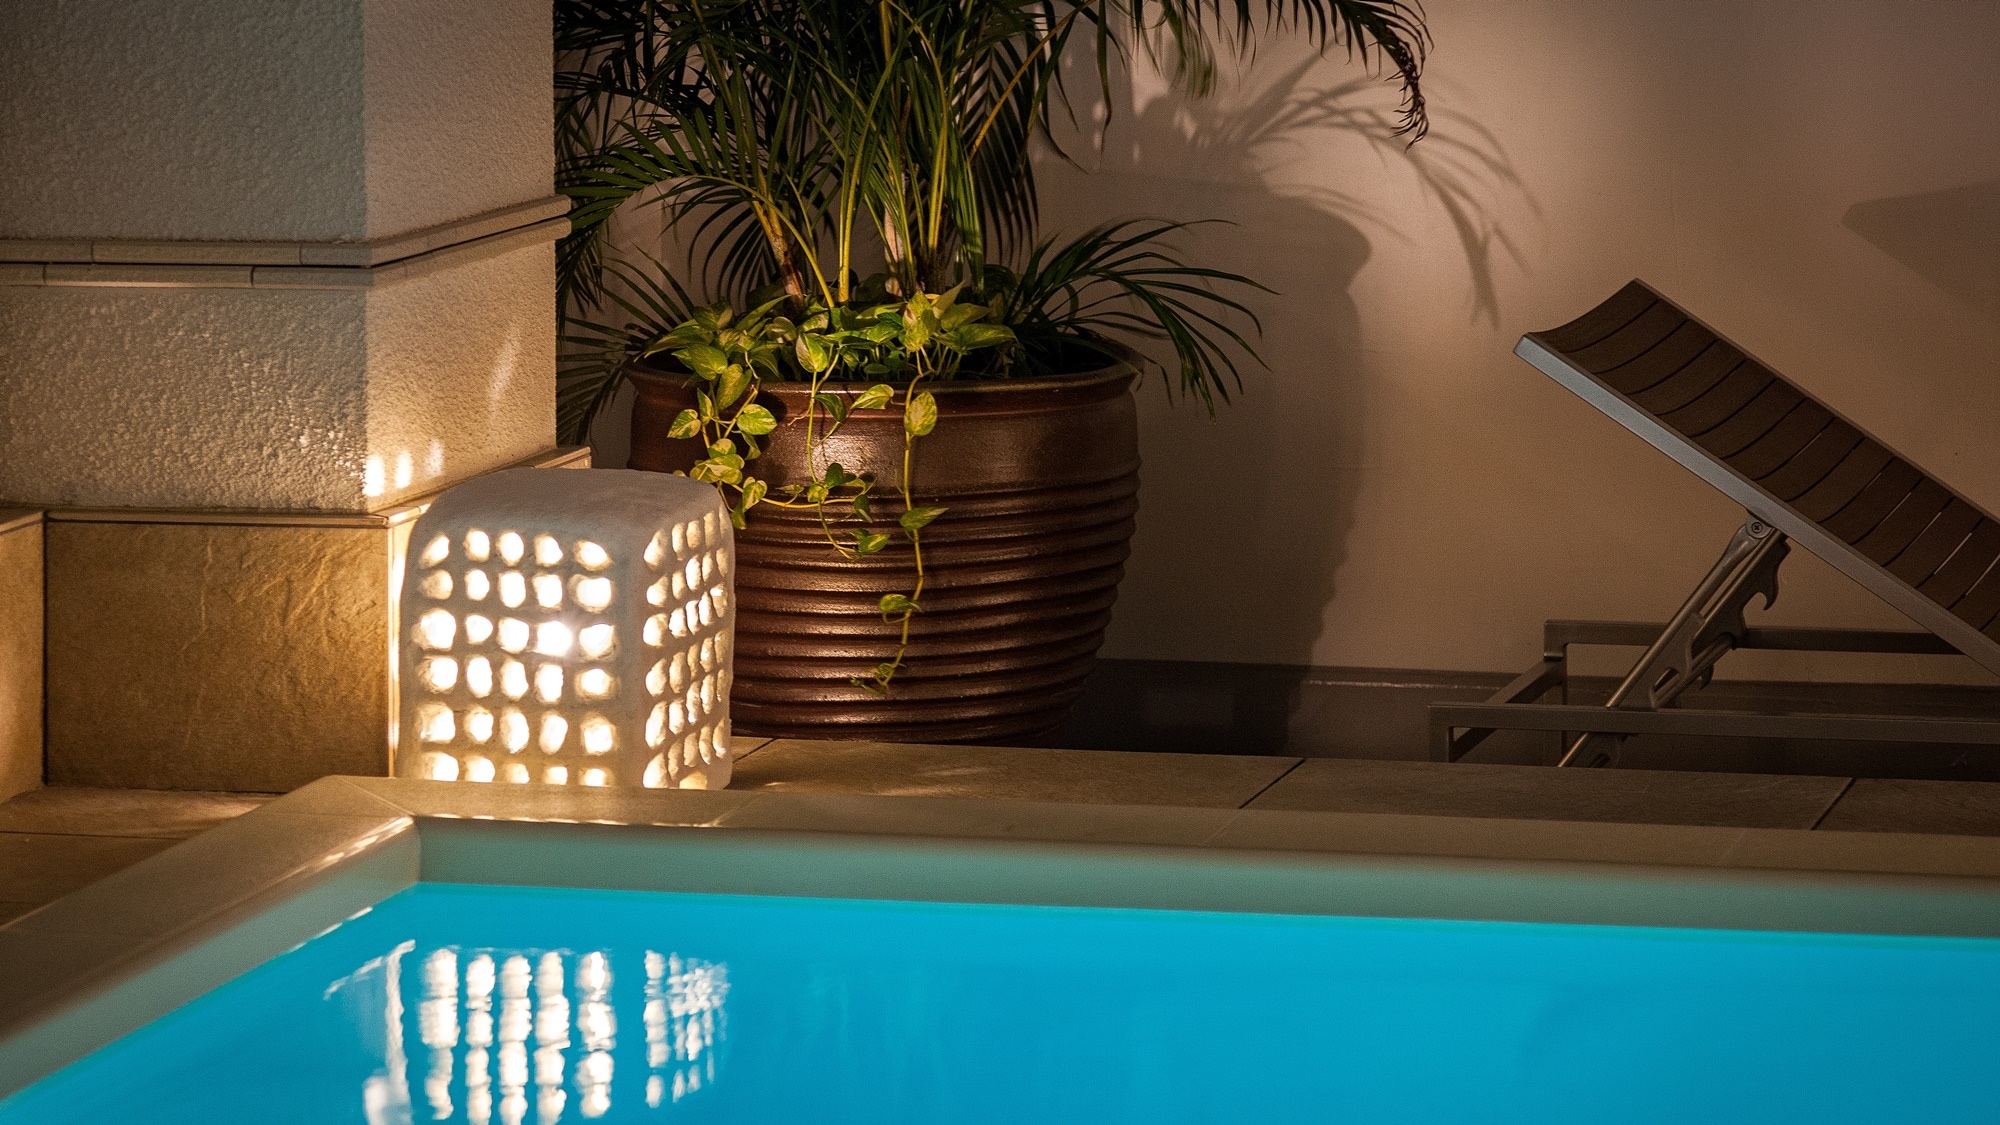 [EXES Villa Suite] Suite tipe vila dengan kolam renang pribadi yang terletak di lantai 10 lantai paling atas.